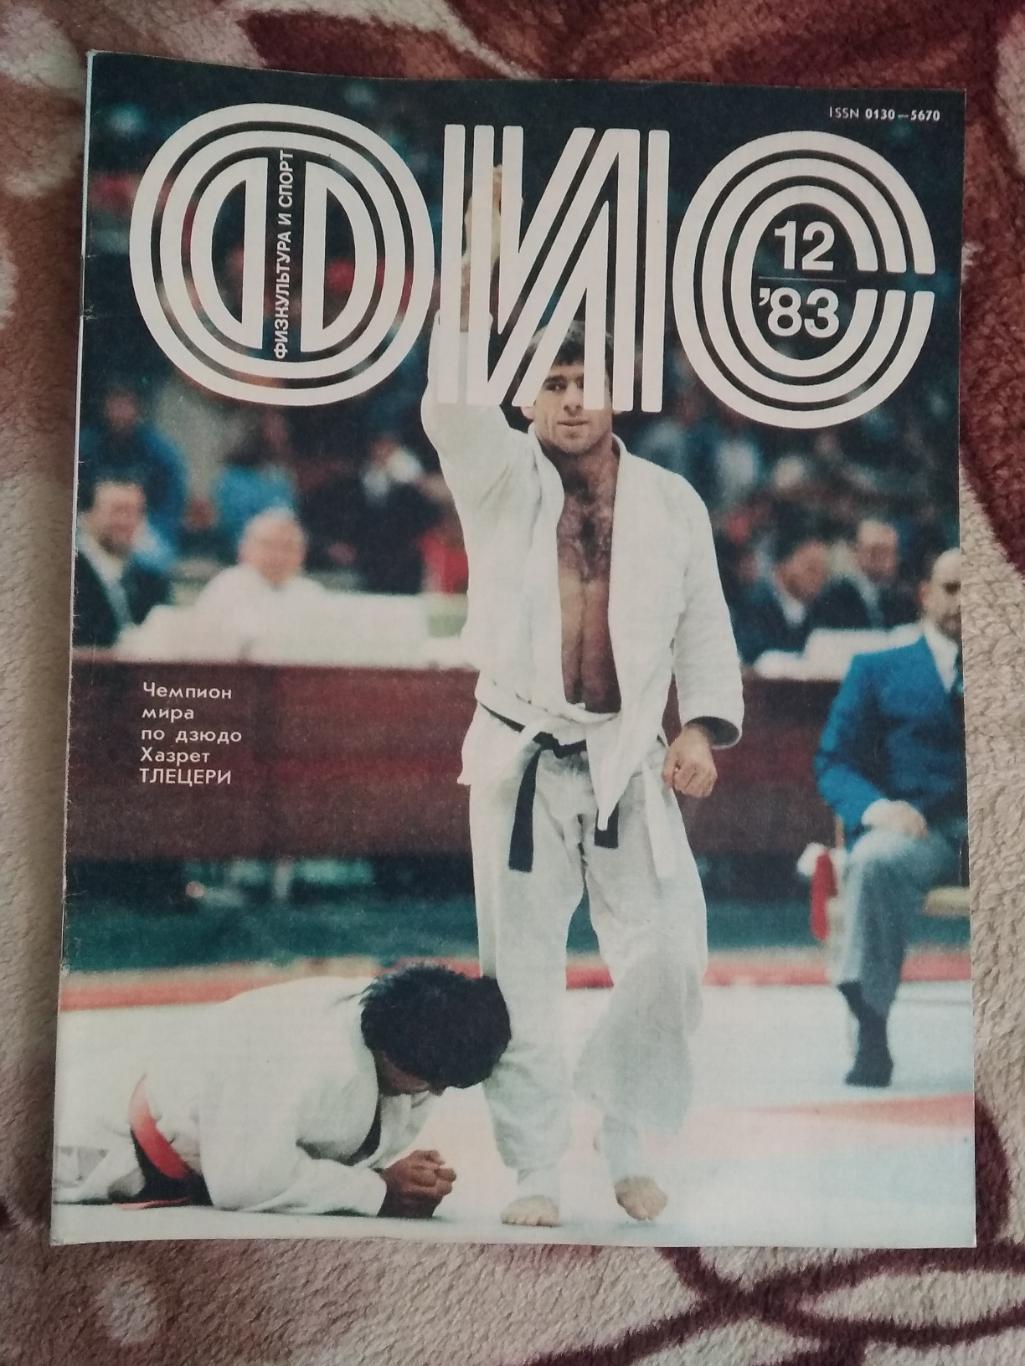 Журнал.Физкультура и спорт № 12 1983 г. (ФиС).